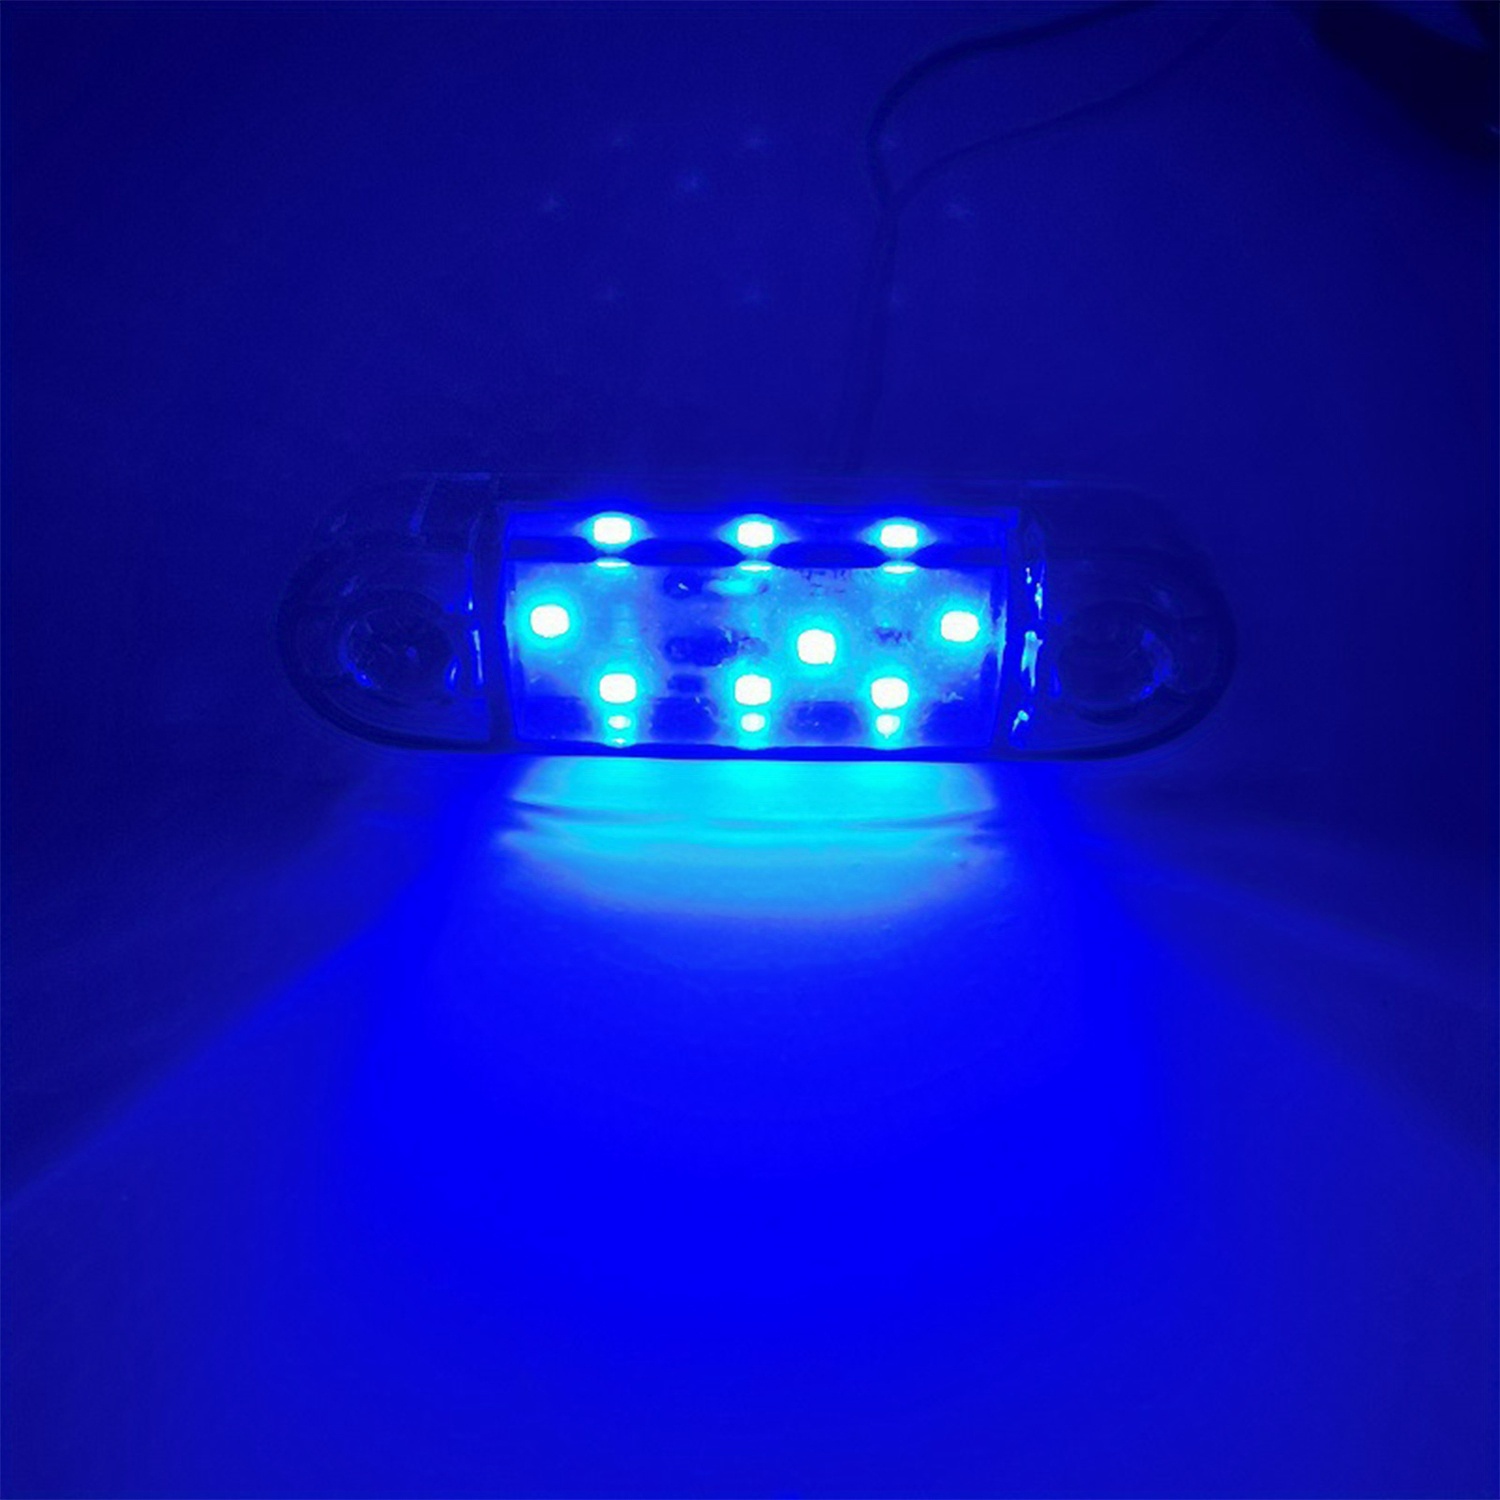 2Pcs 10W LED blanche antibrouillard de moto, 3 pouces LED phare de moto  lumière supplémentaire moto